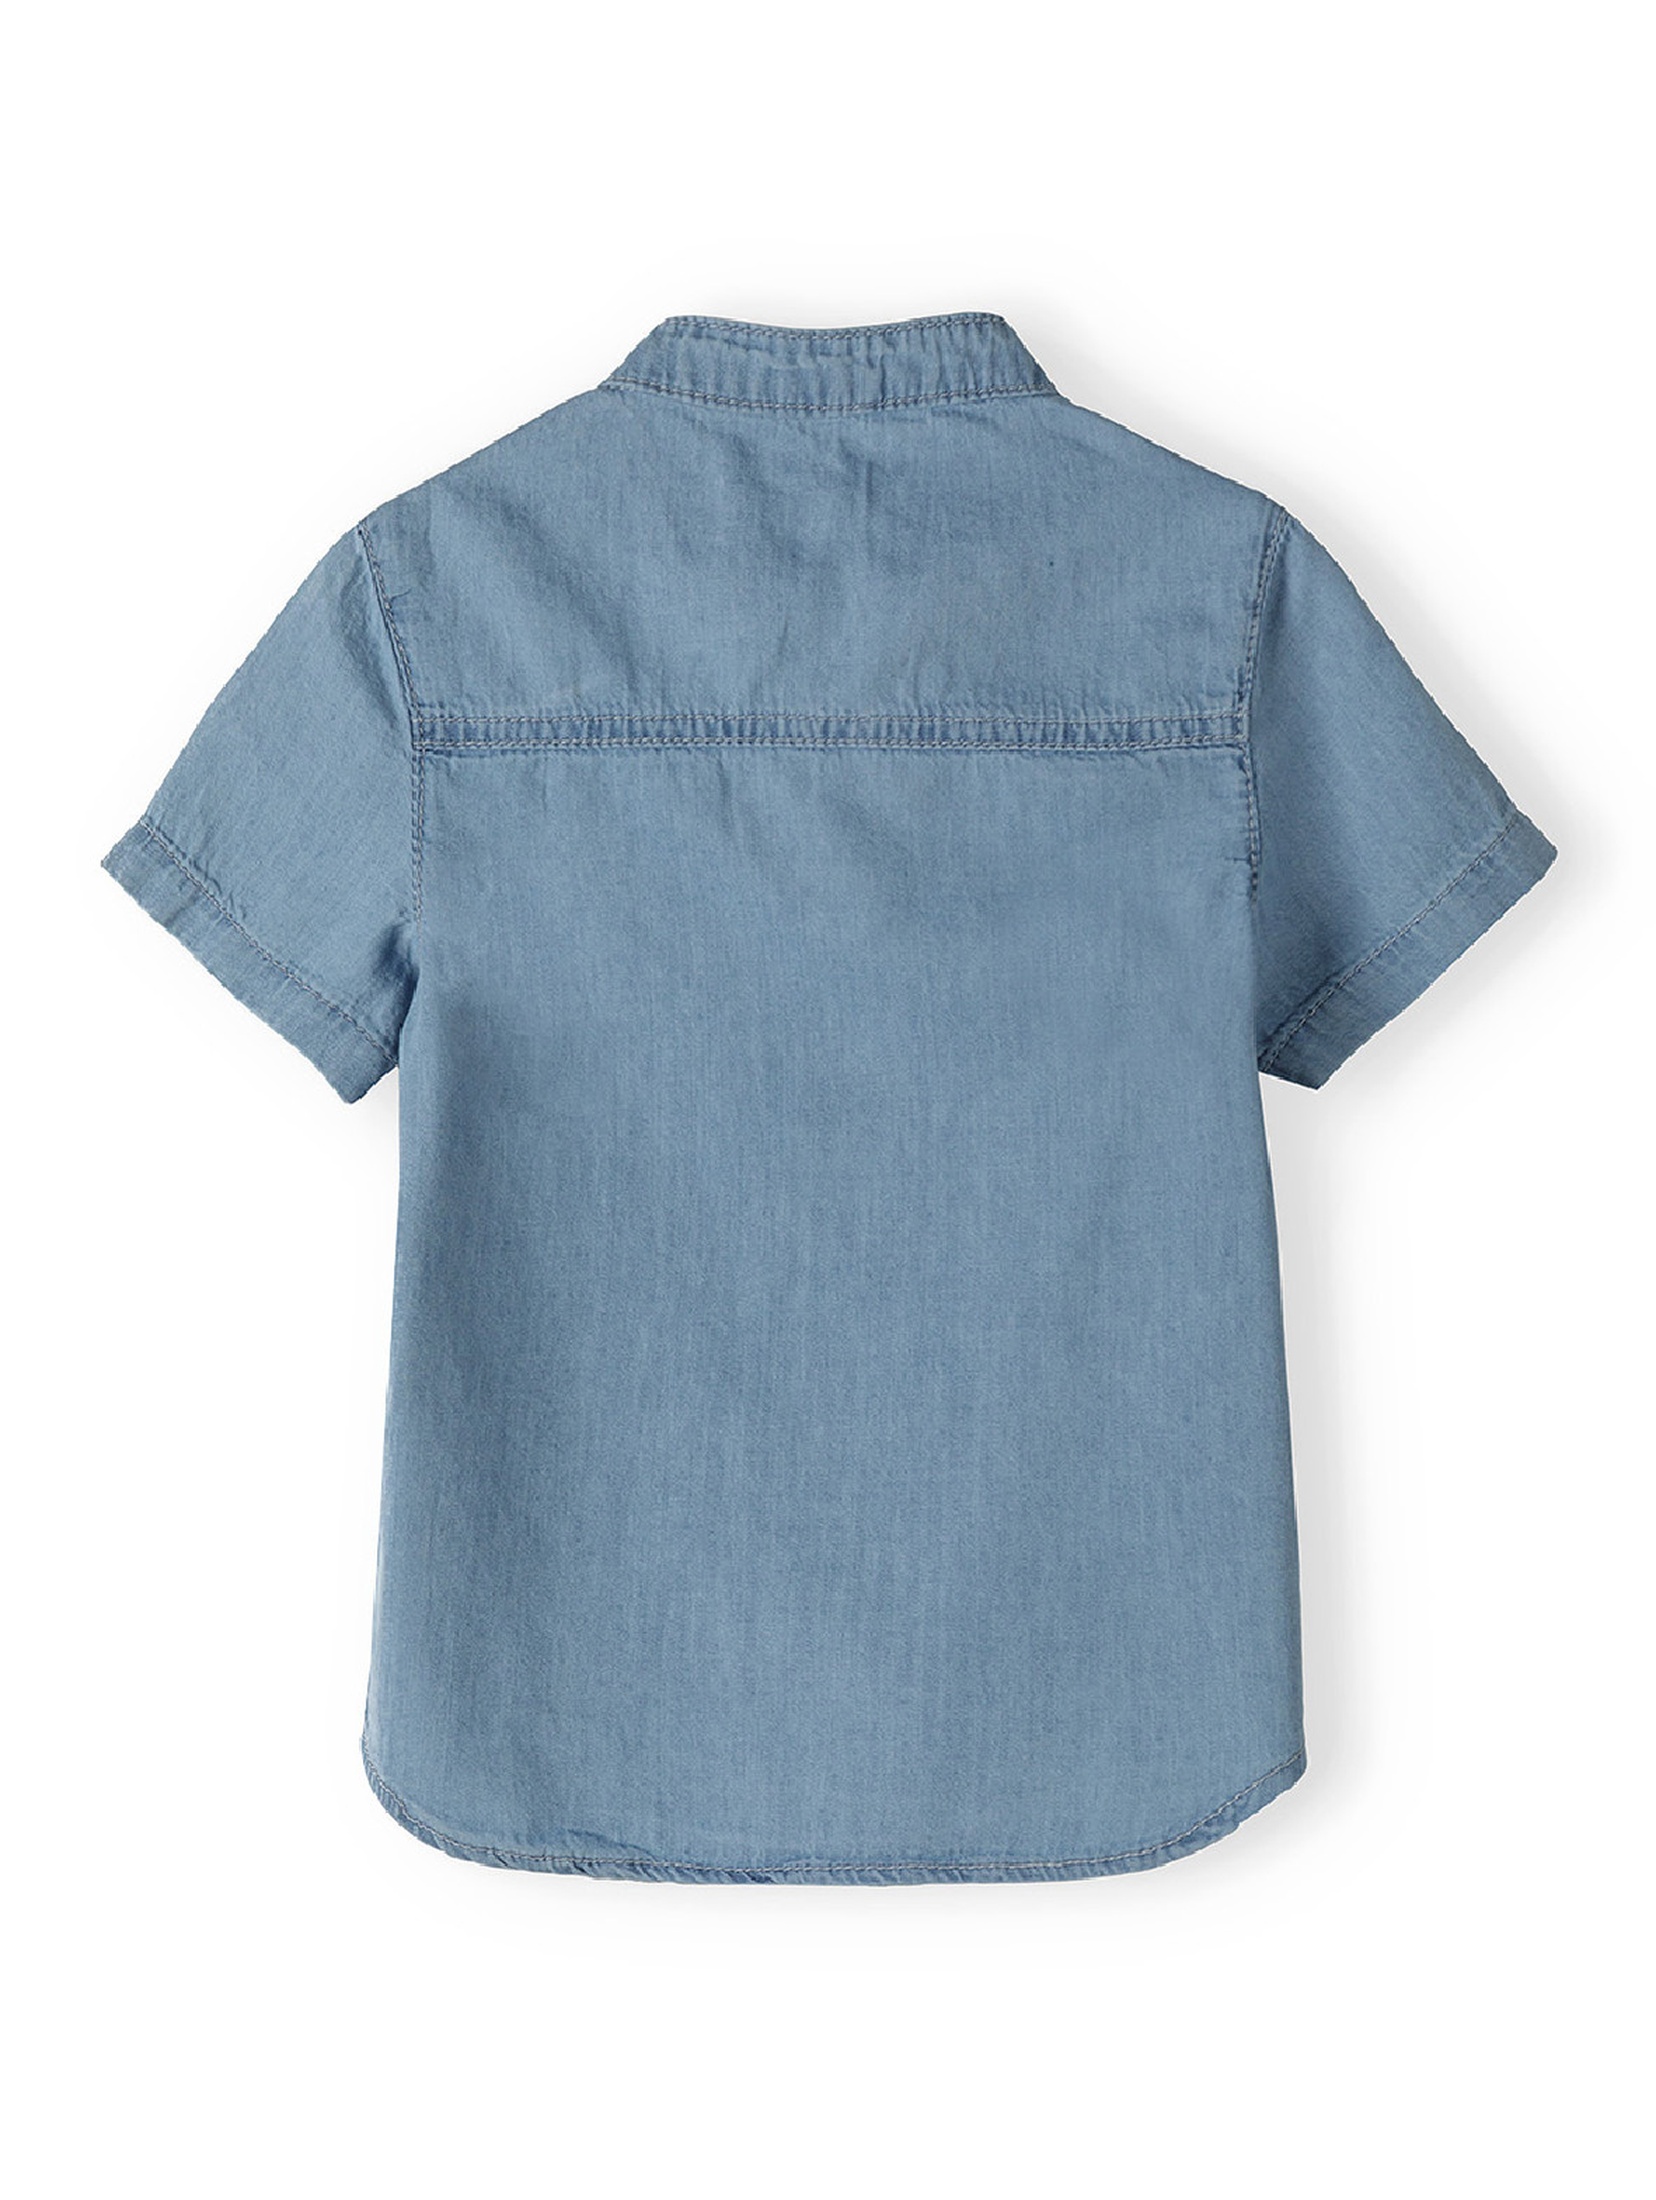 Komplet niemowlęcy- niebieska koszula + beżowe krótkie spodenki